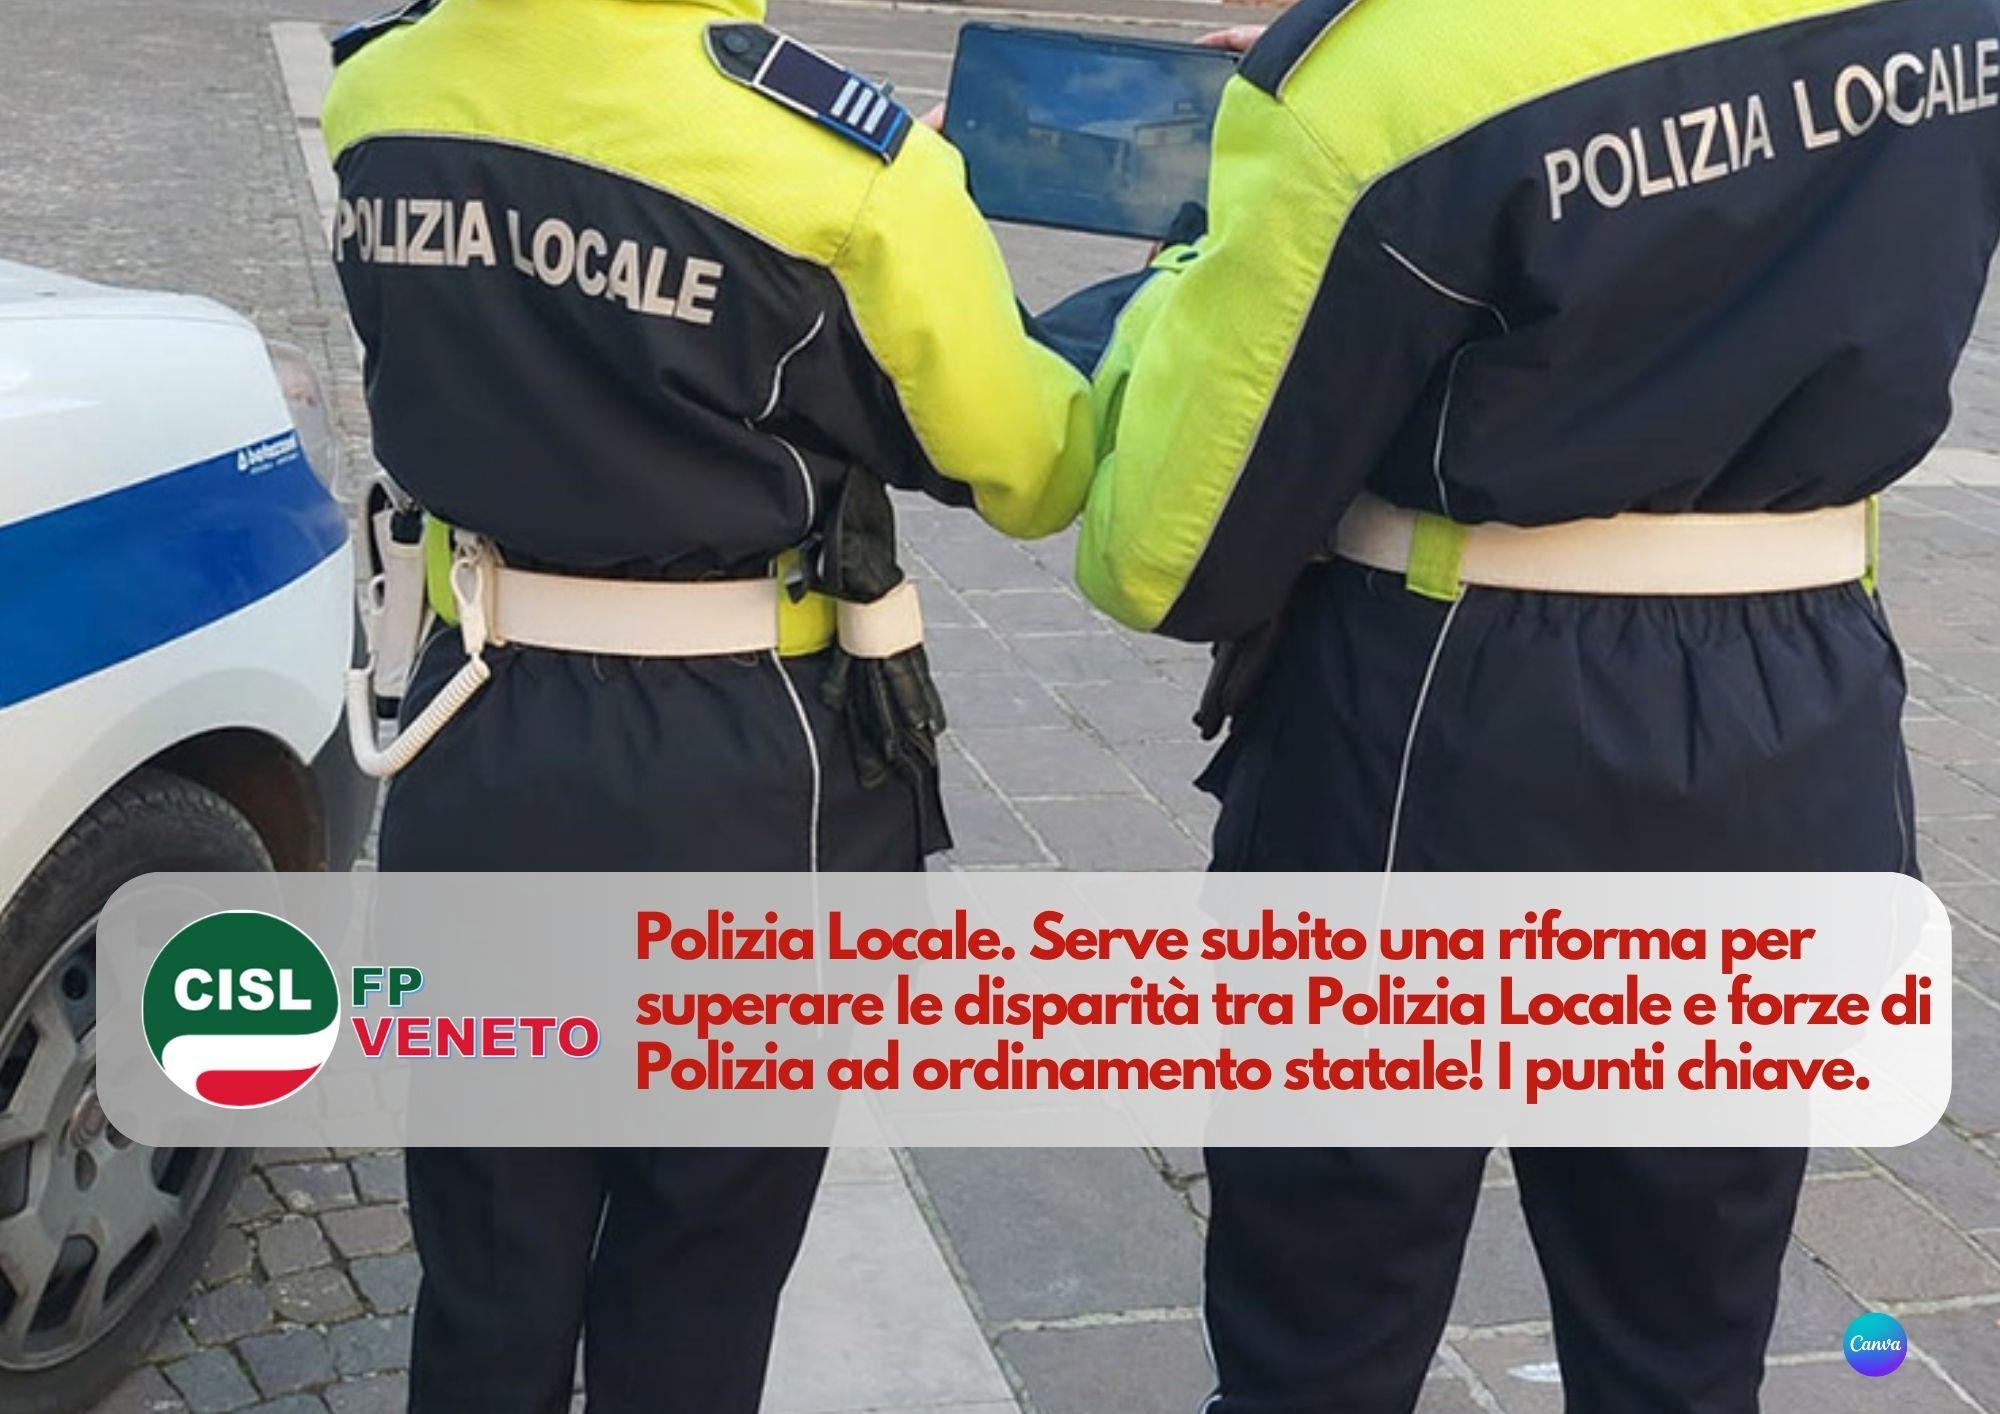 CISL FP Veneto. Polizia Locale: serve una riforma per superare le disparità. Da fare ora!